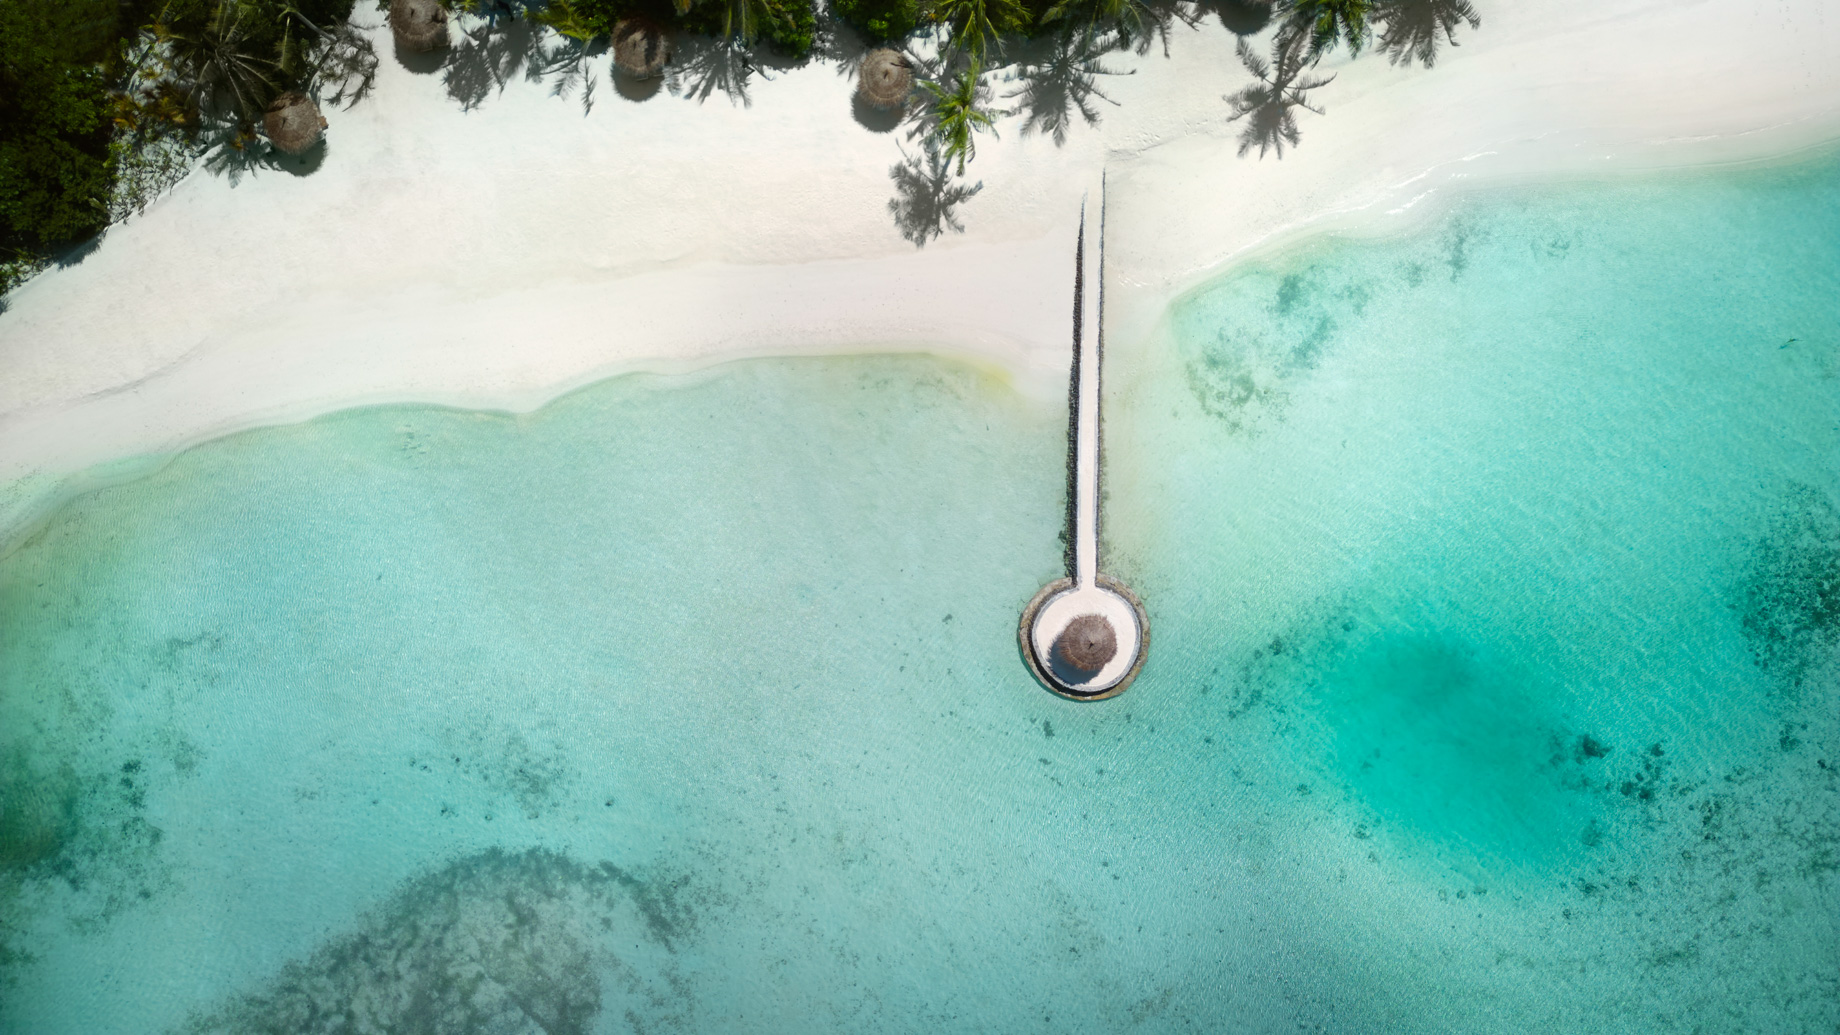 Anantara Veli Maldives Resort – South Male Atoll, Maldives – Private Beach Jetty Overhead Aerial View